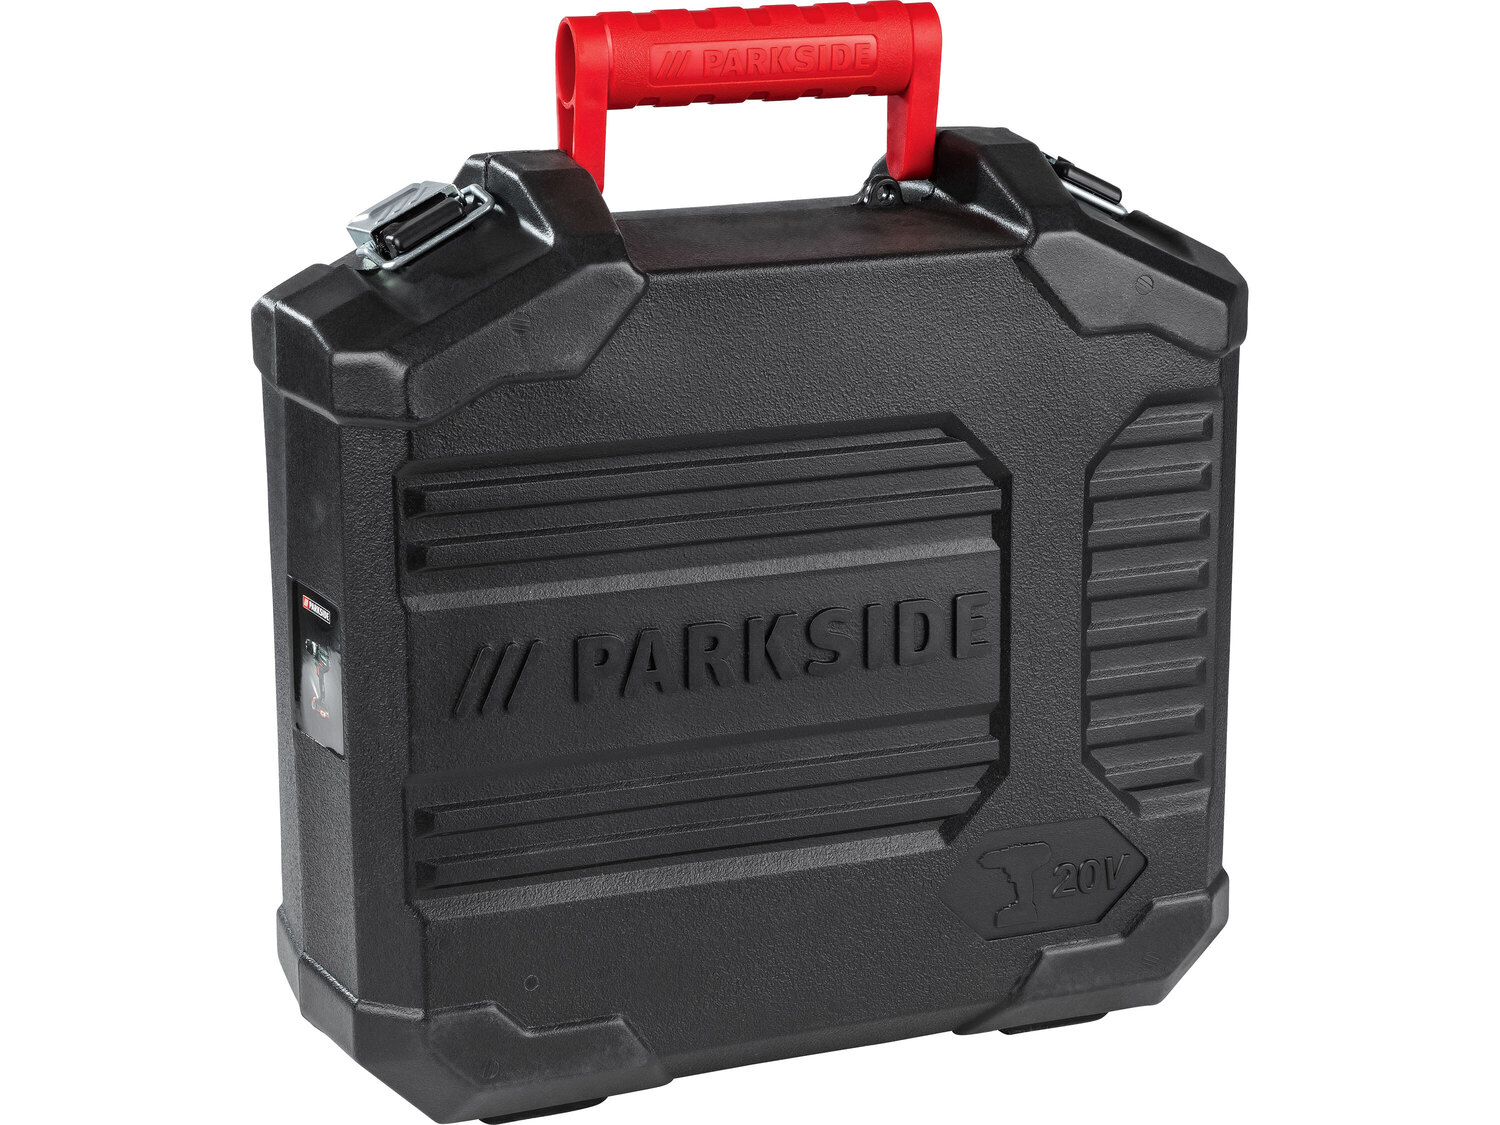 Akumulatorowa wiertarkowkrętarka Parkside 20 V , cena 199,00 PLN 
- szybko mocujący ...